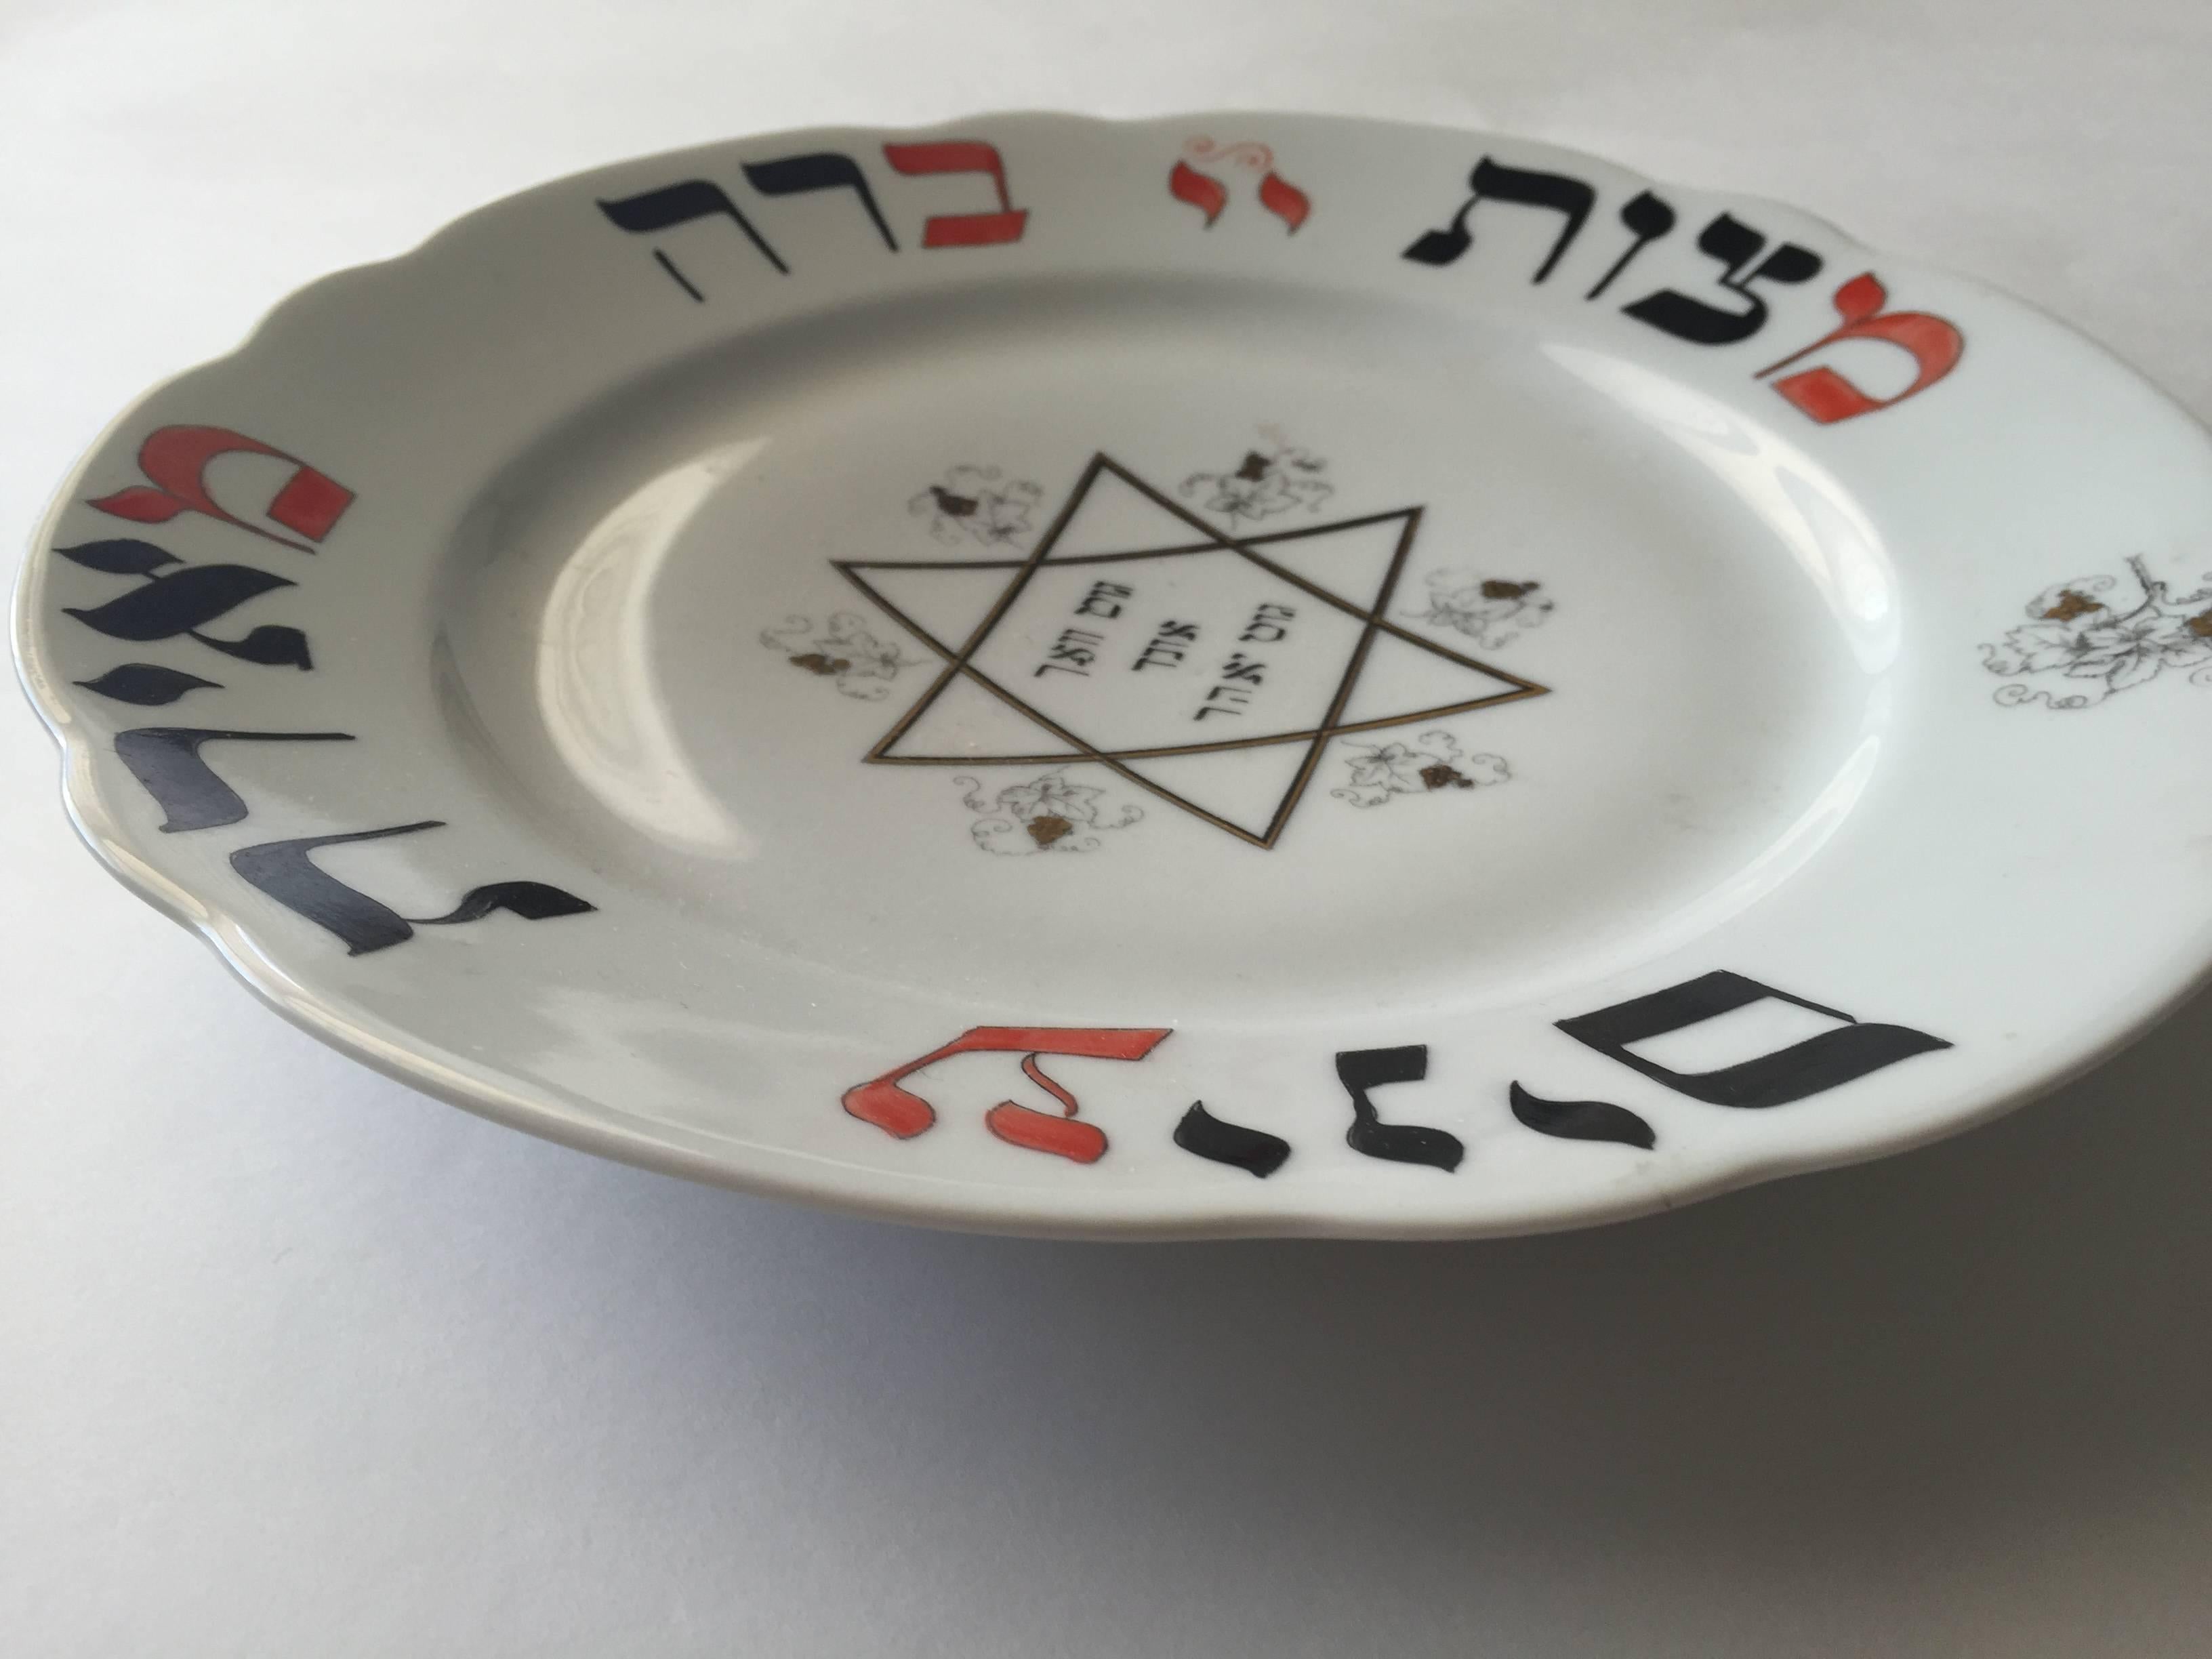 Hier ist ein seltener bemalter und schablonierter jüdischer Teller mit einem jiddischen Gruß aus dem späten 19. und frühen 20. Ein seltenes Stück jüdischen Porzellans aus der Vorkriegszeit. In einer kräftigen Farbkombination aus Schwarz und Rot.